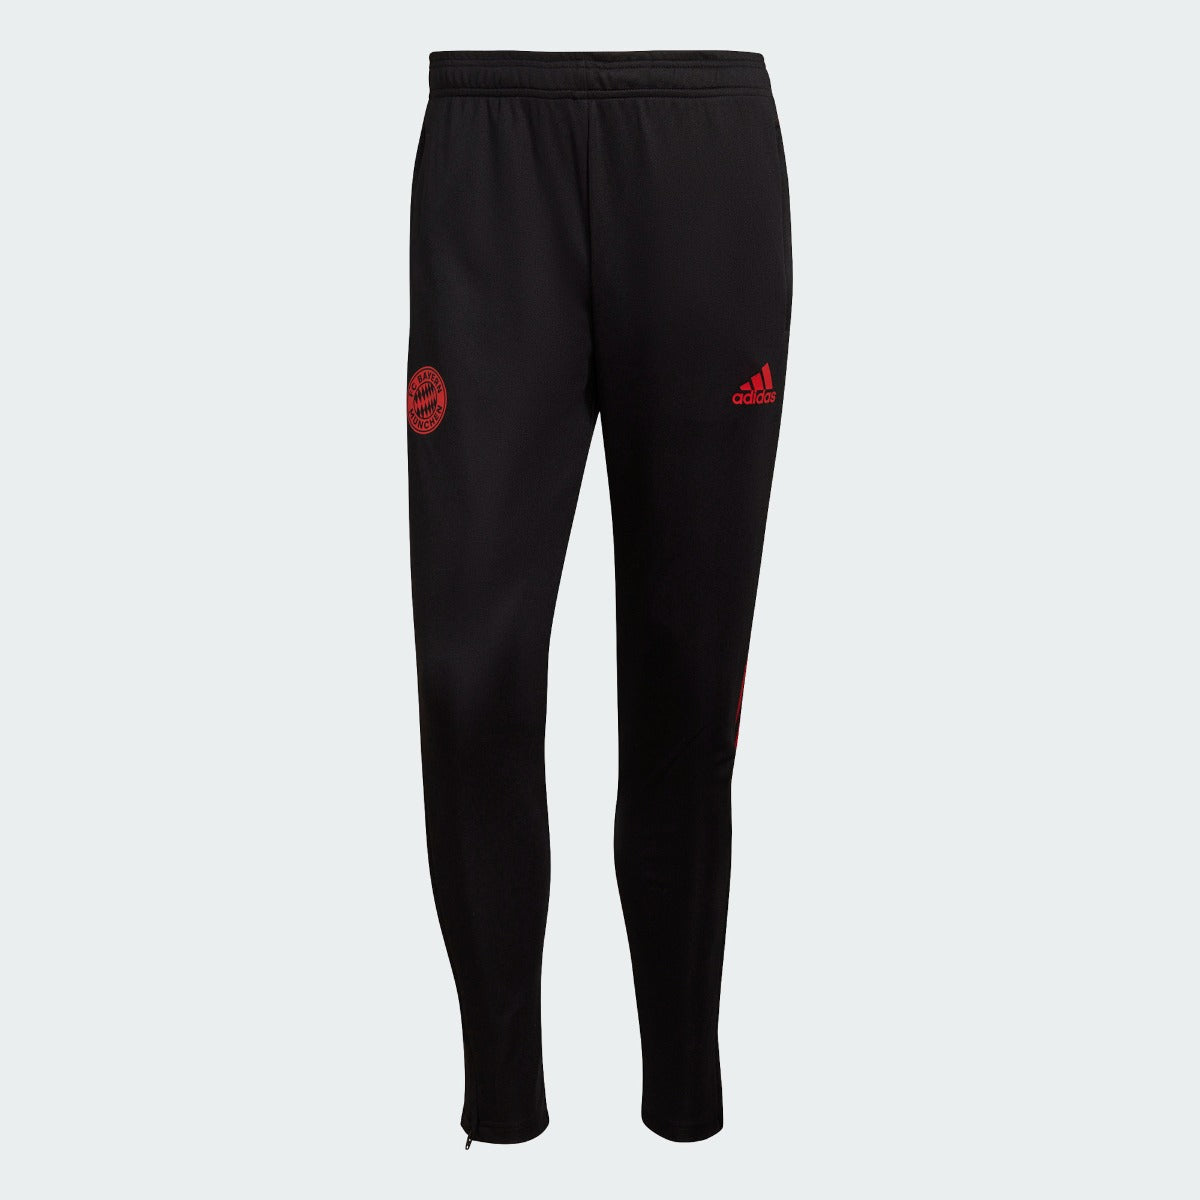 Adidas 2021-22 Bayern Munich Training Pants - Black-Red (Front)